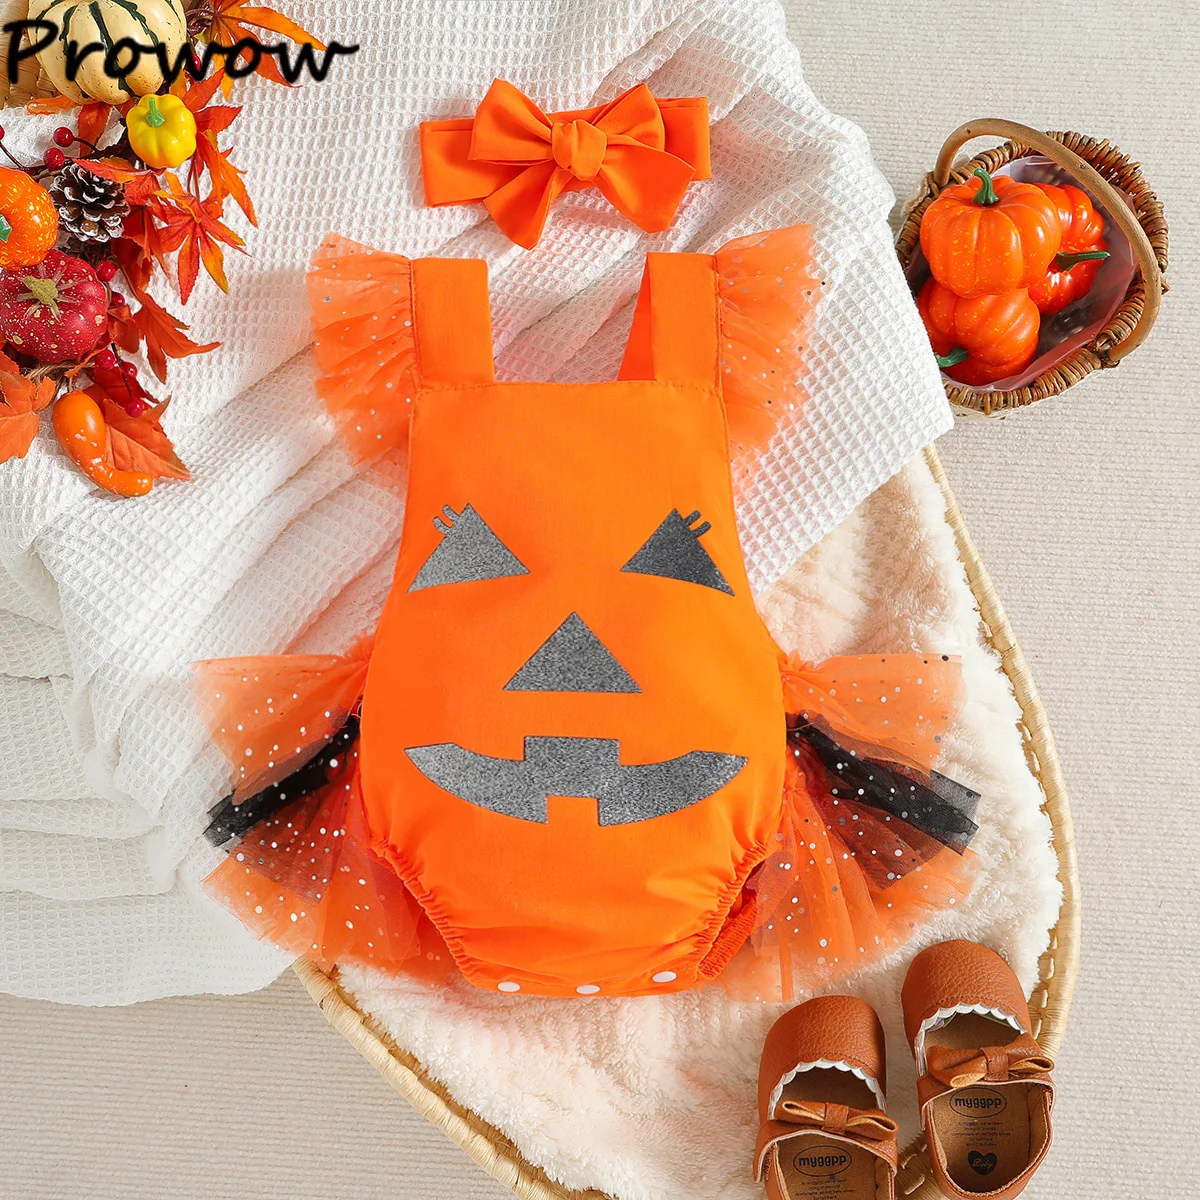 Prowow 0-18 м, детский комбинезон на Хэллоуин, Оранжевое боди для новорожденных, платья принцессы Тыквы, мой первый детский костюм на Хэллоуин Изображение 1